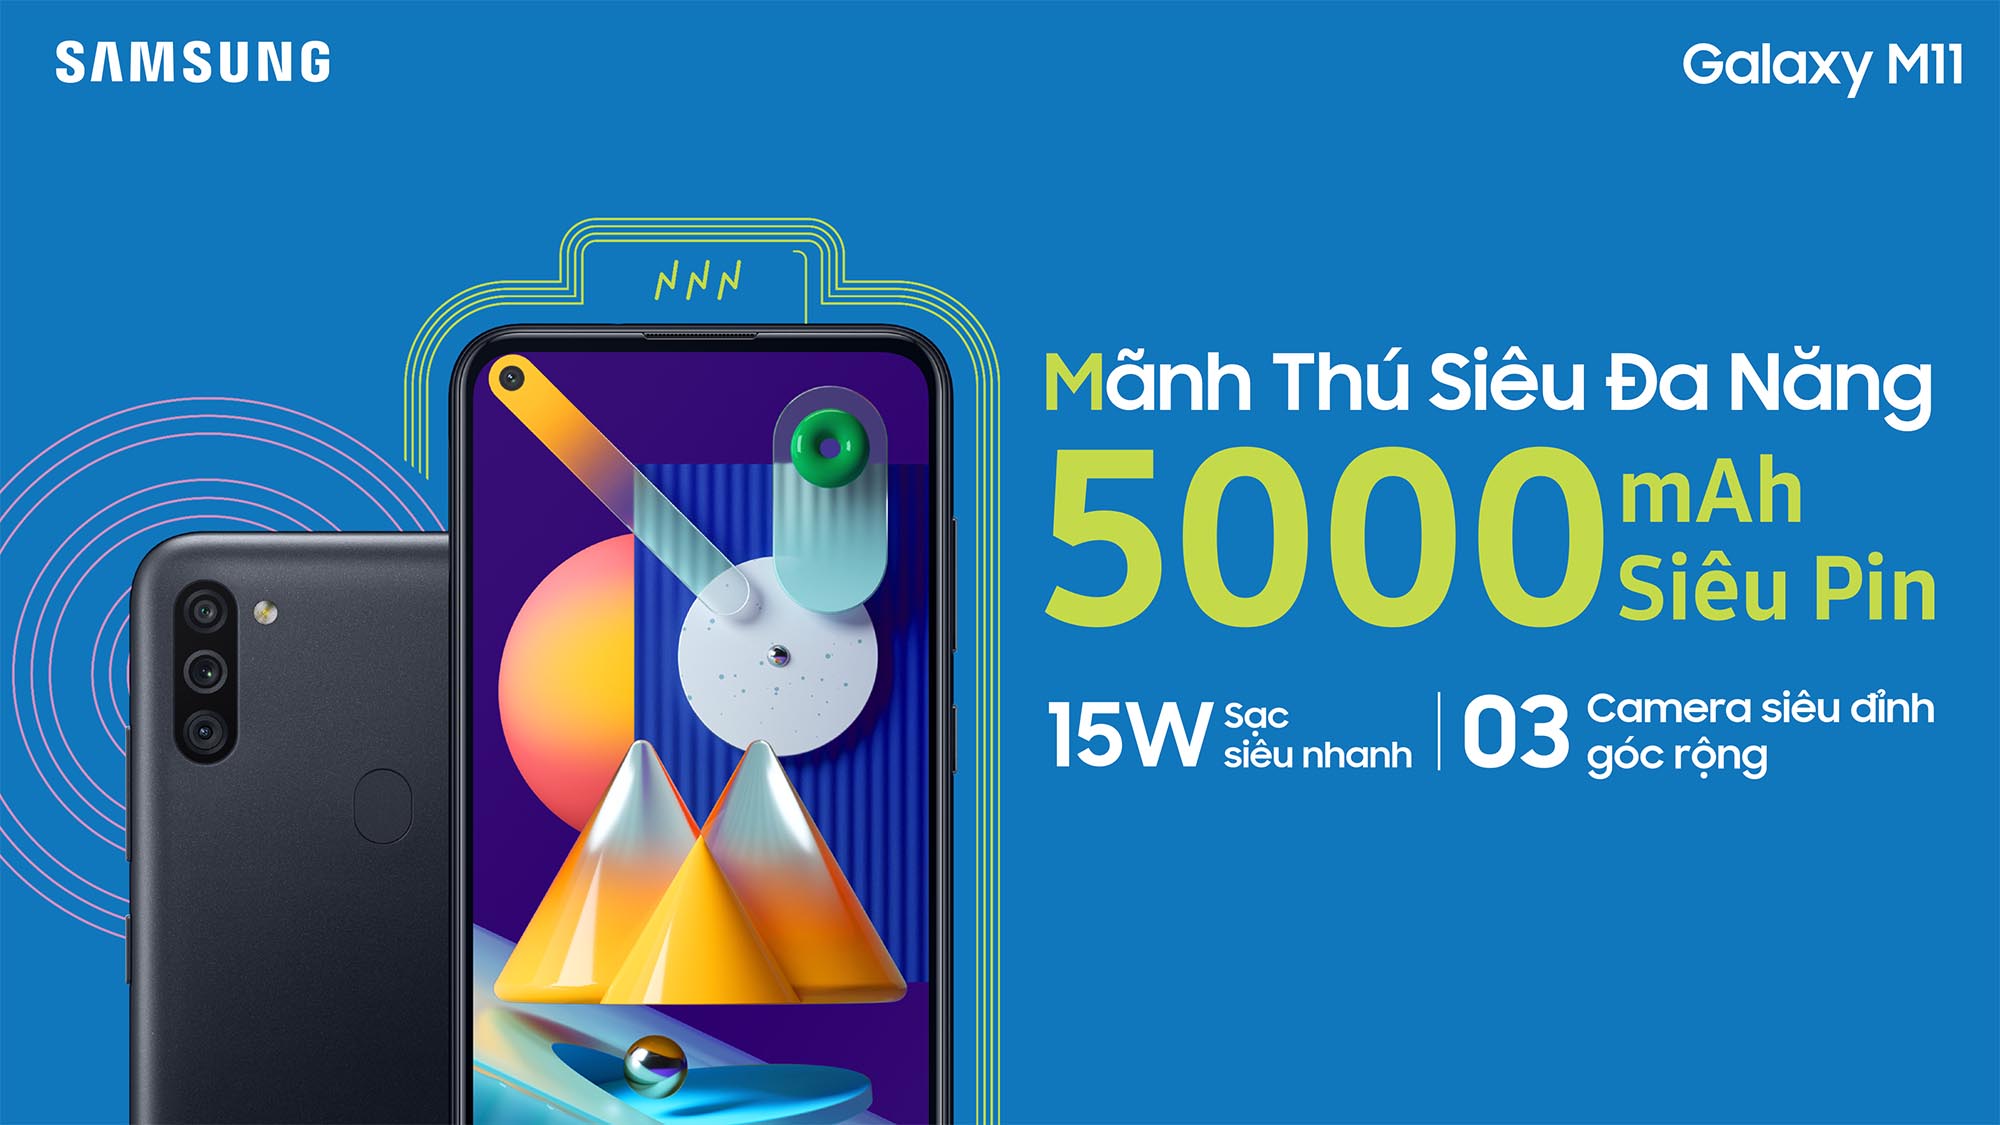 Samsung ra mắt Galaxy M11 tại Việt Nam: Pin khủng, 3 camera, giá 3,690,000 VND